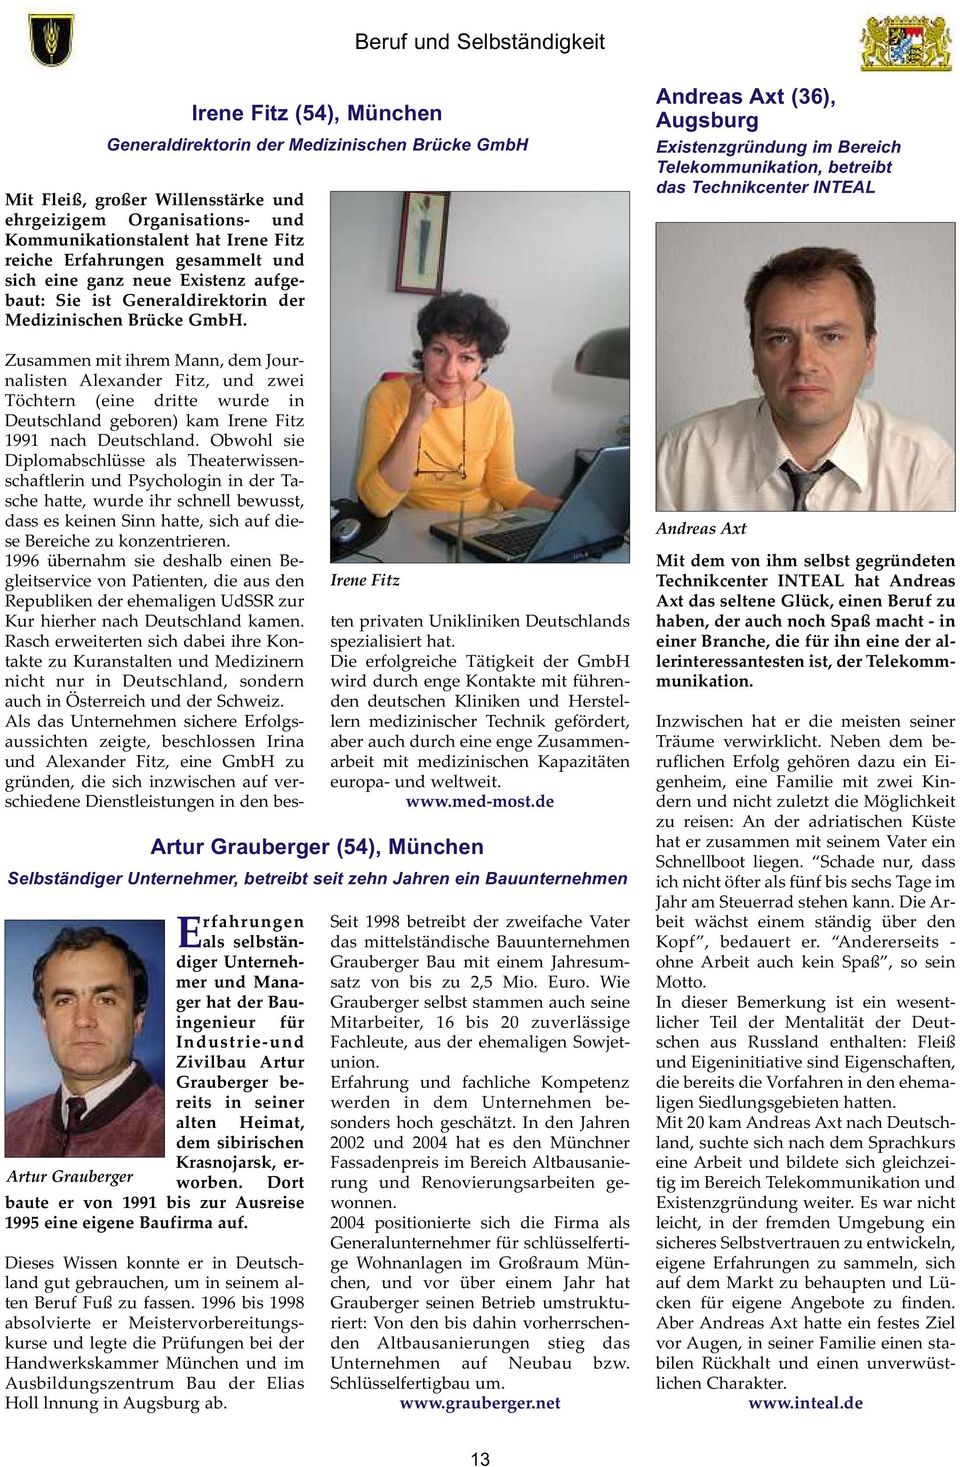 Irene Fitz (54), München Generaldirektorin der Medizinischen Brücke GmbH Irene Fitz Zusammen mit ihrem Mann, dem Journalisten Alexander Fitz, und zwei Töchtern (eine dritte wurde in Deutschland